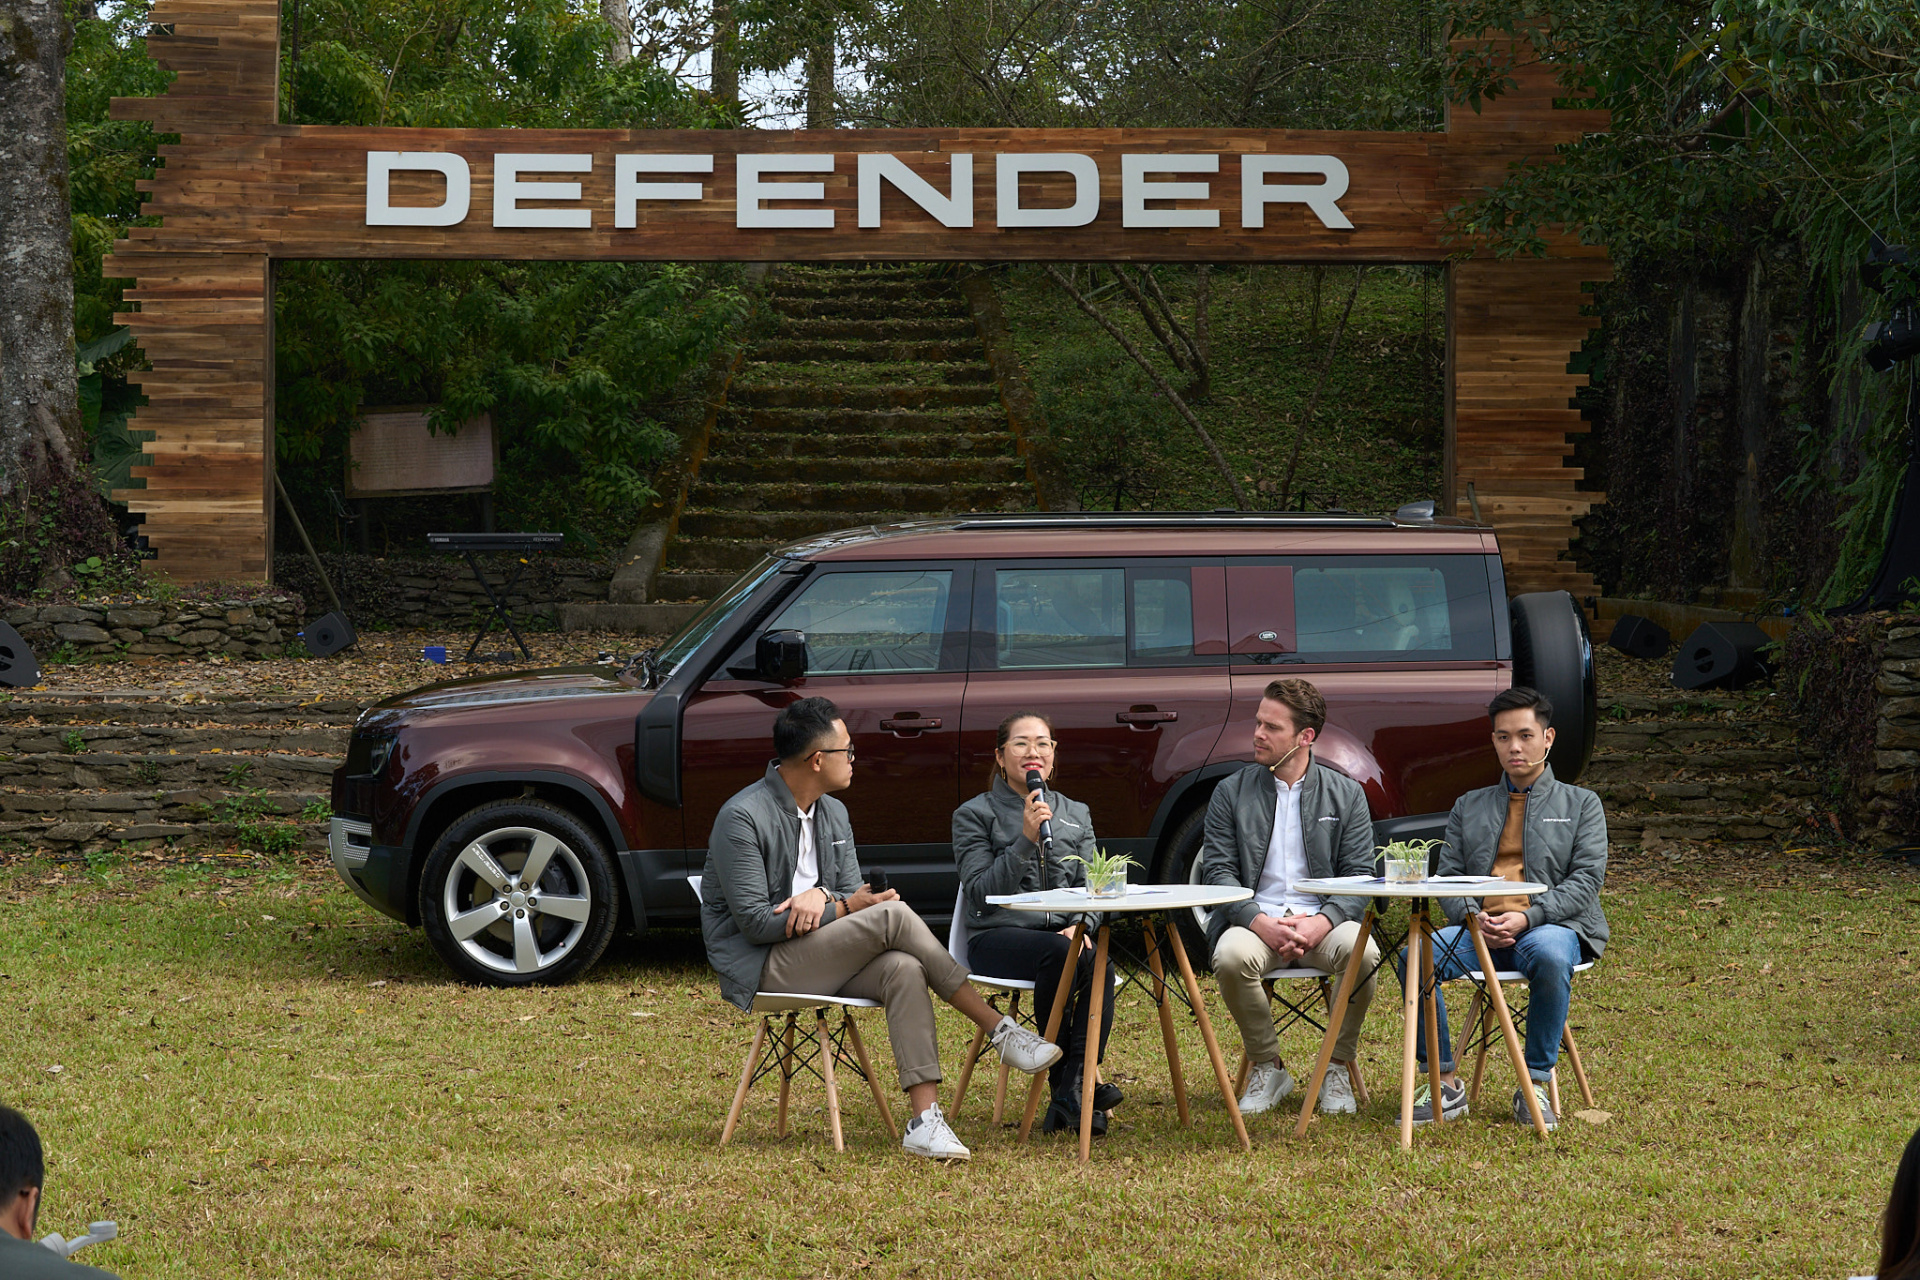 Land Rover Defender 130 mới: Lựa chọn lý tưởng cho golfers và những tín đồ offroad